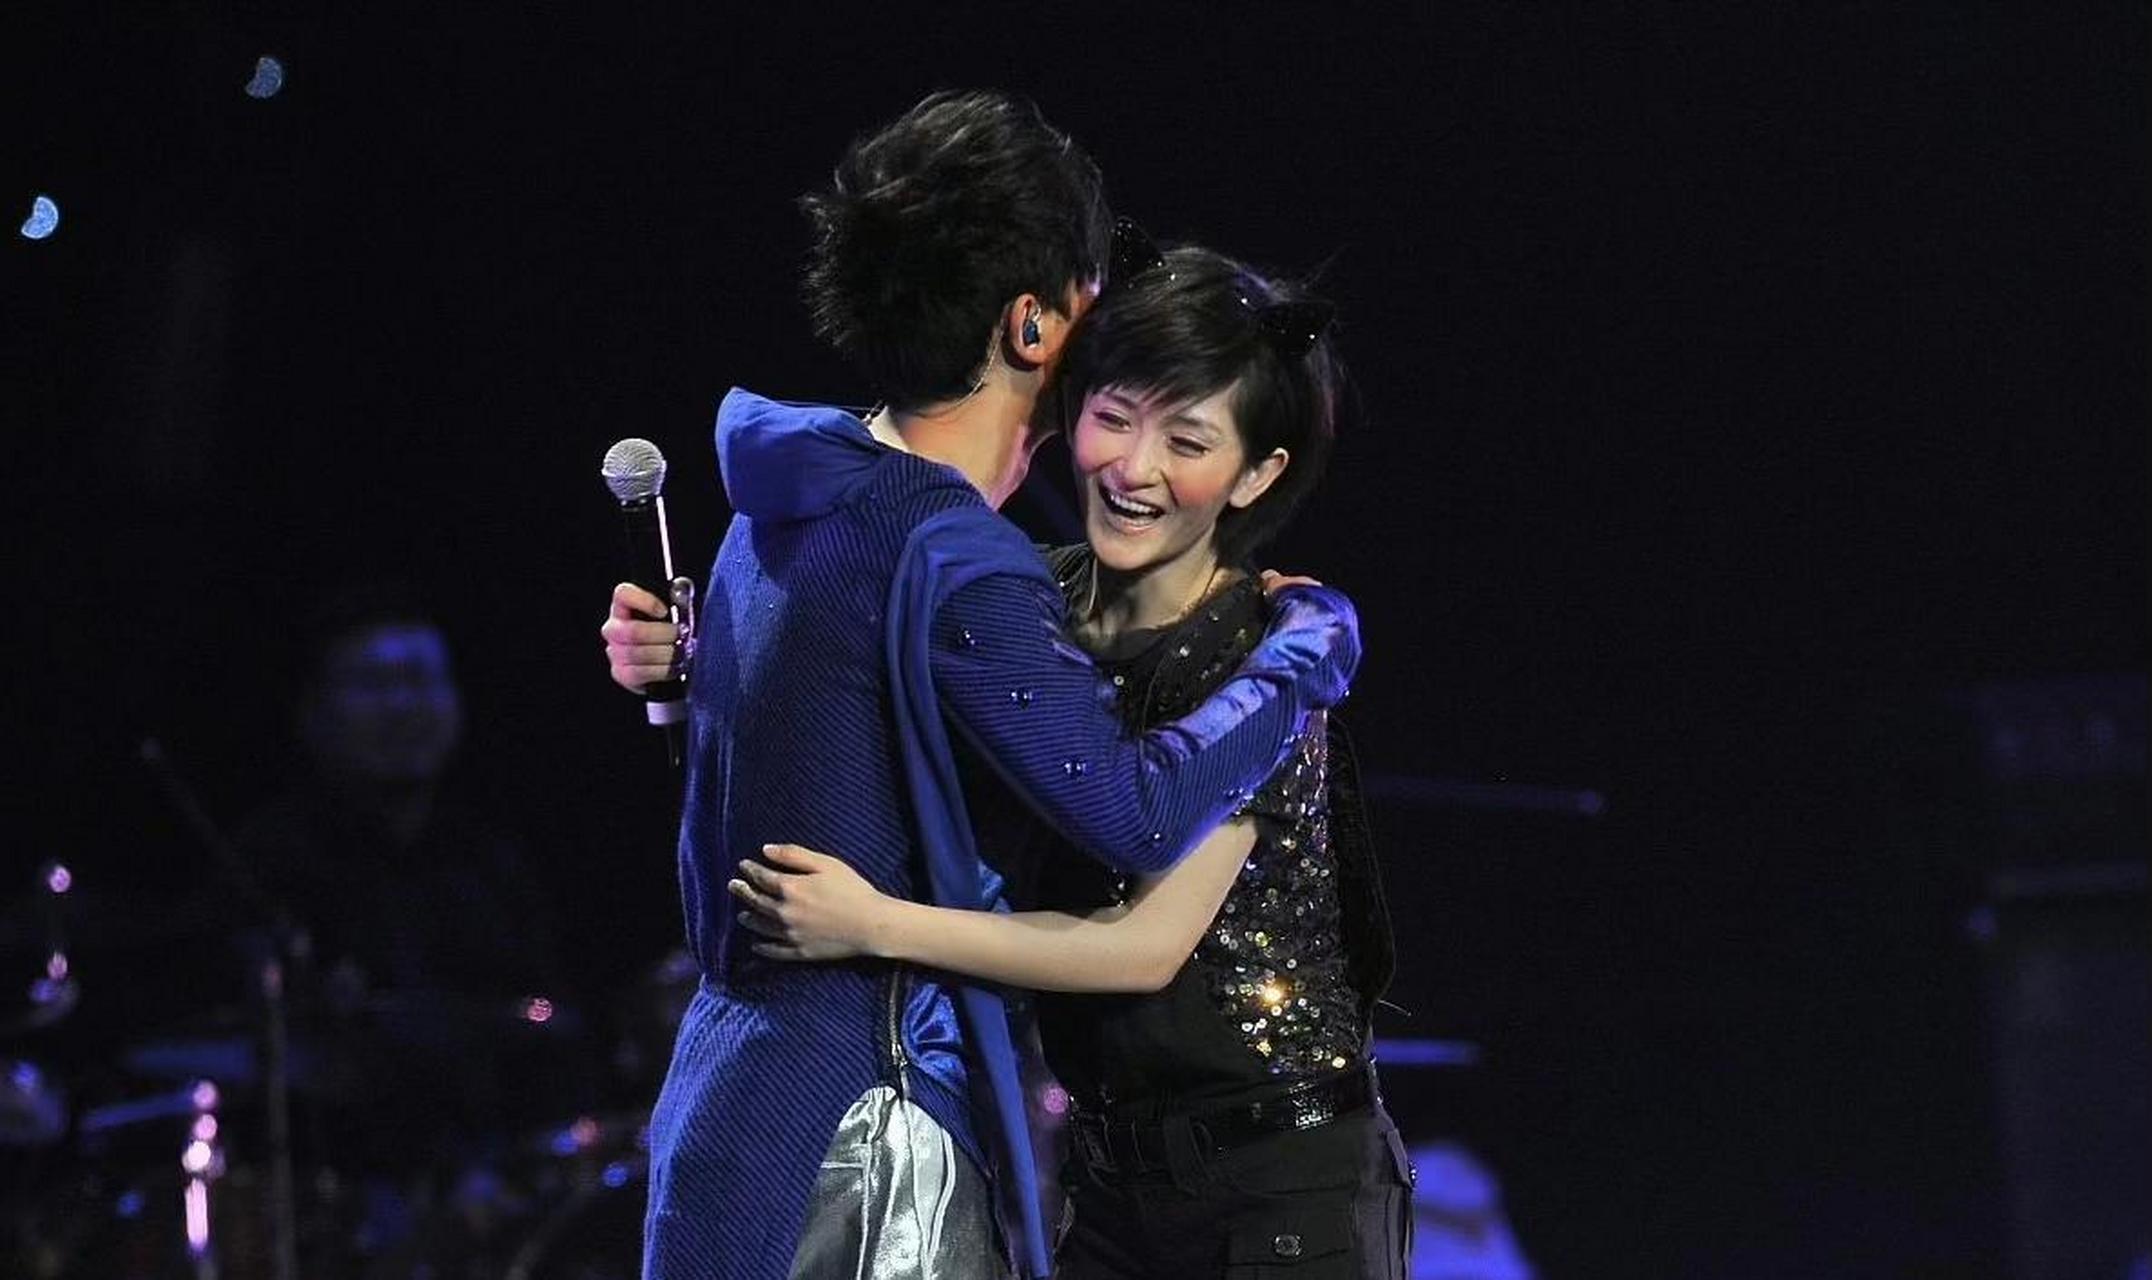 当年谢娜和张杰在台上拥抱时,那时候的谢娜是真的漂亮啊!